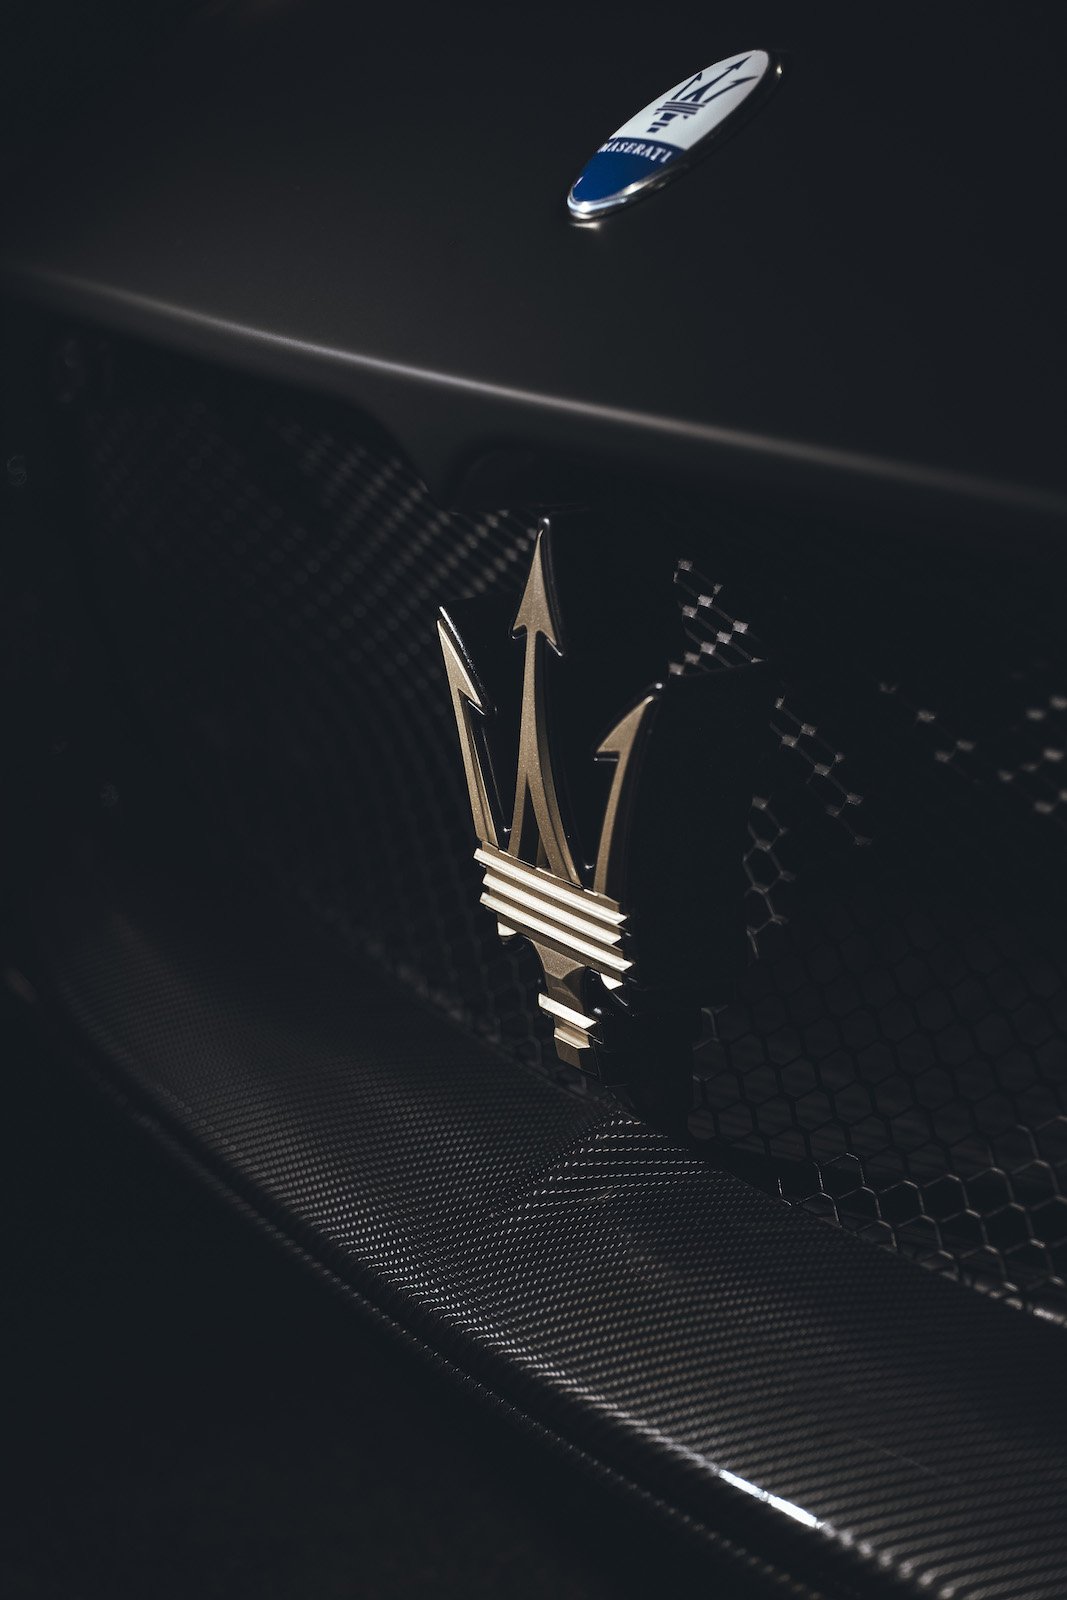 Maserati MC20 Notte